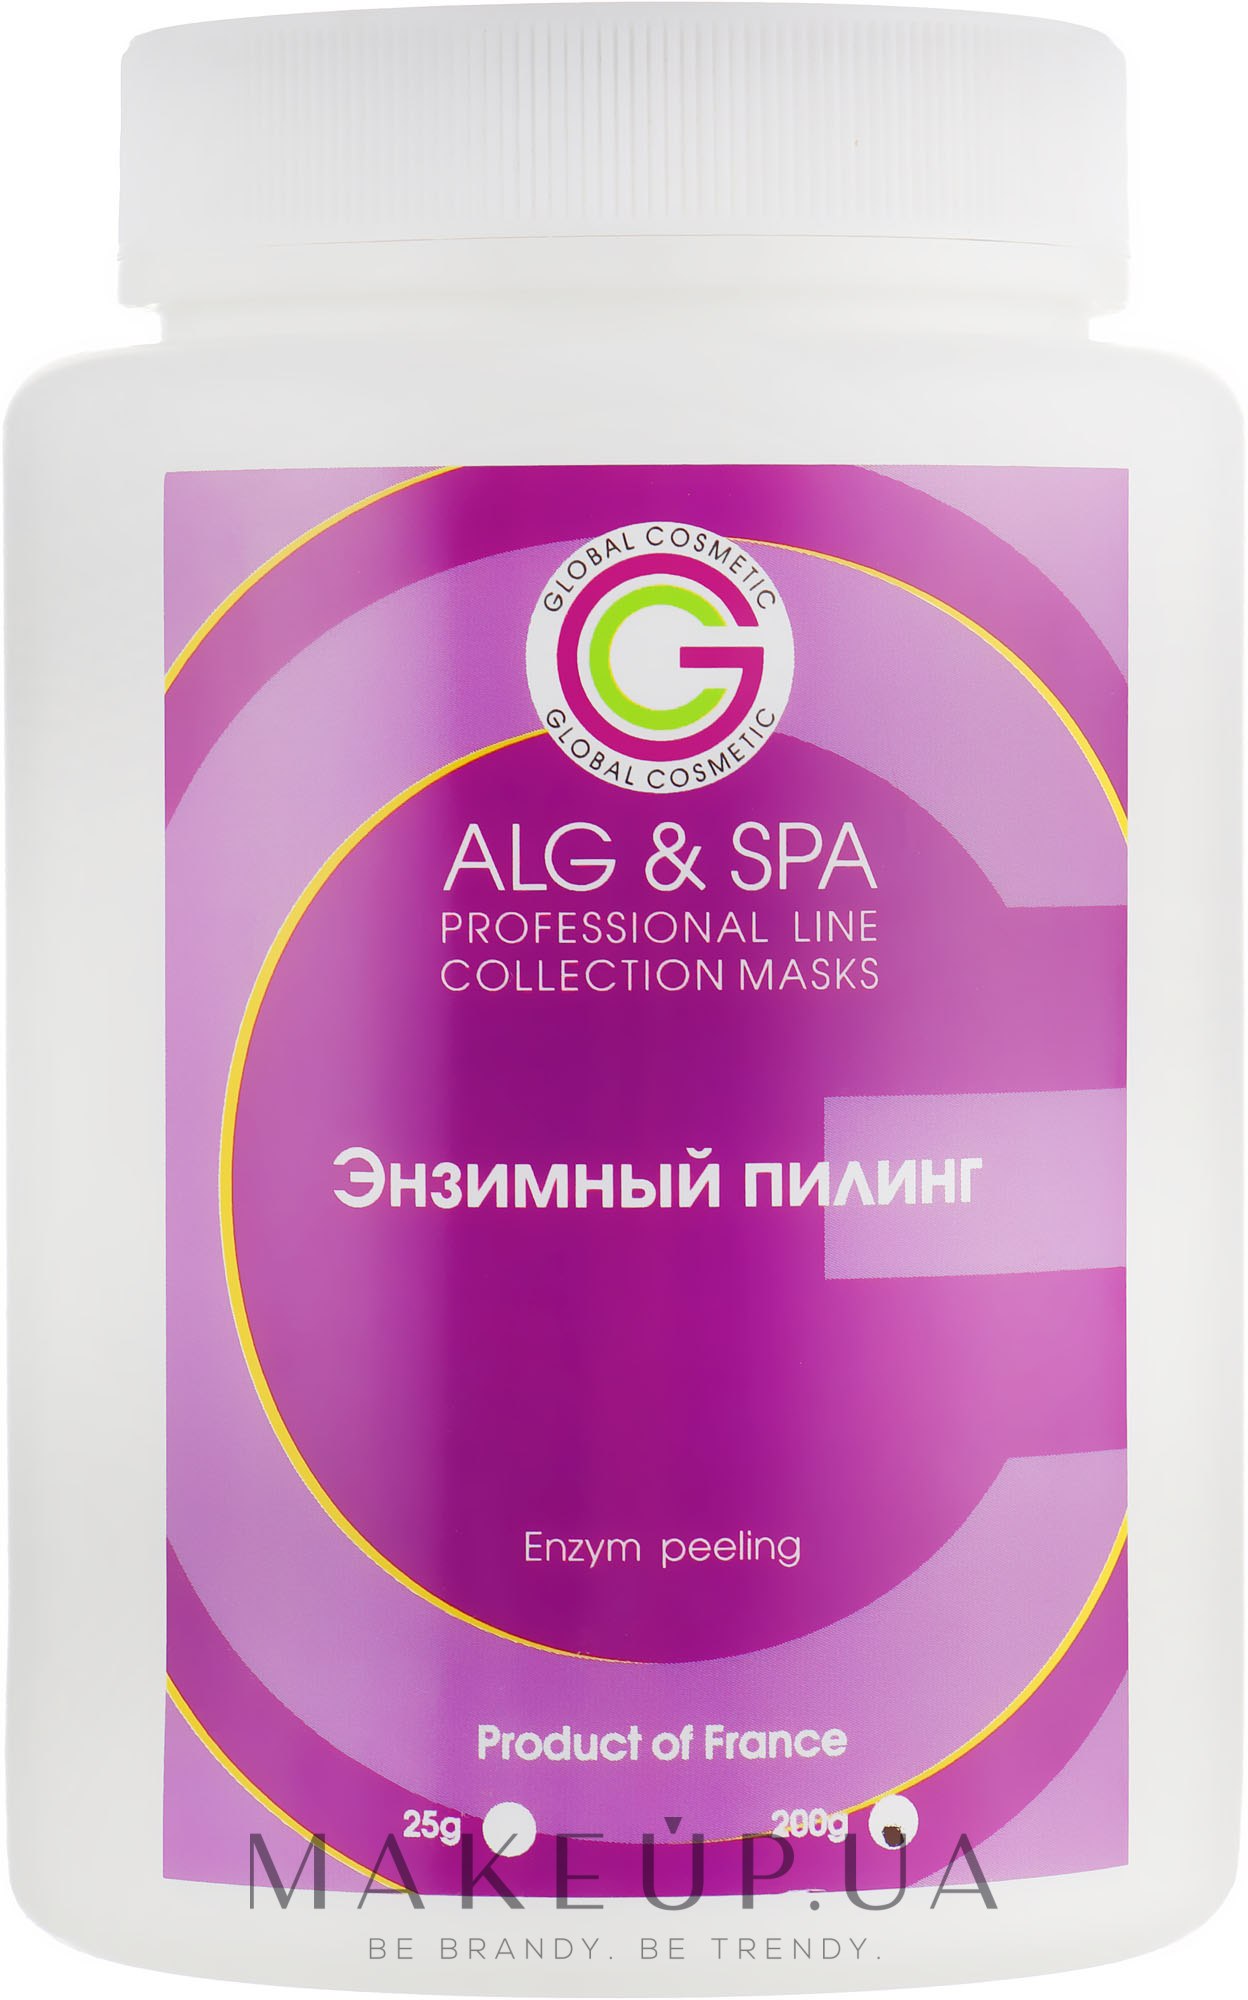 Маска Энзимный пилинг - ALG & SPA Professional Line Collection Masks Enzym Peeling  — фото 25g